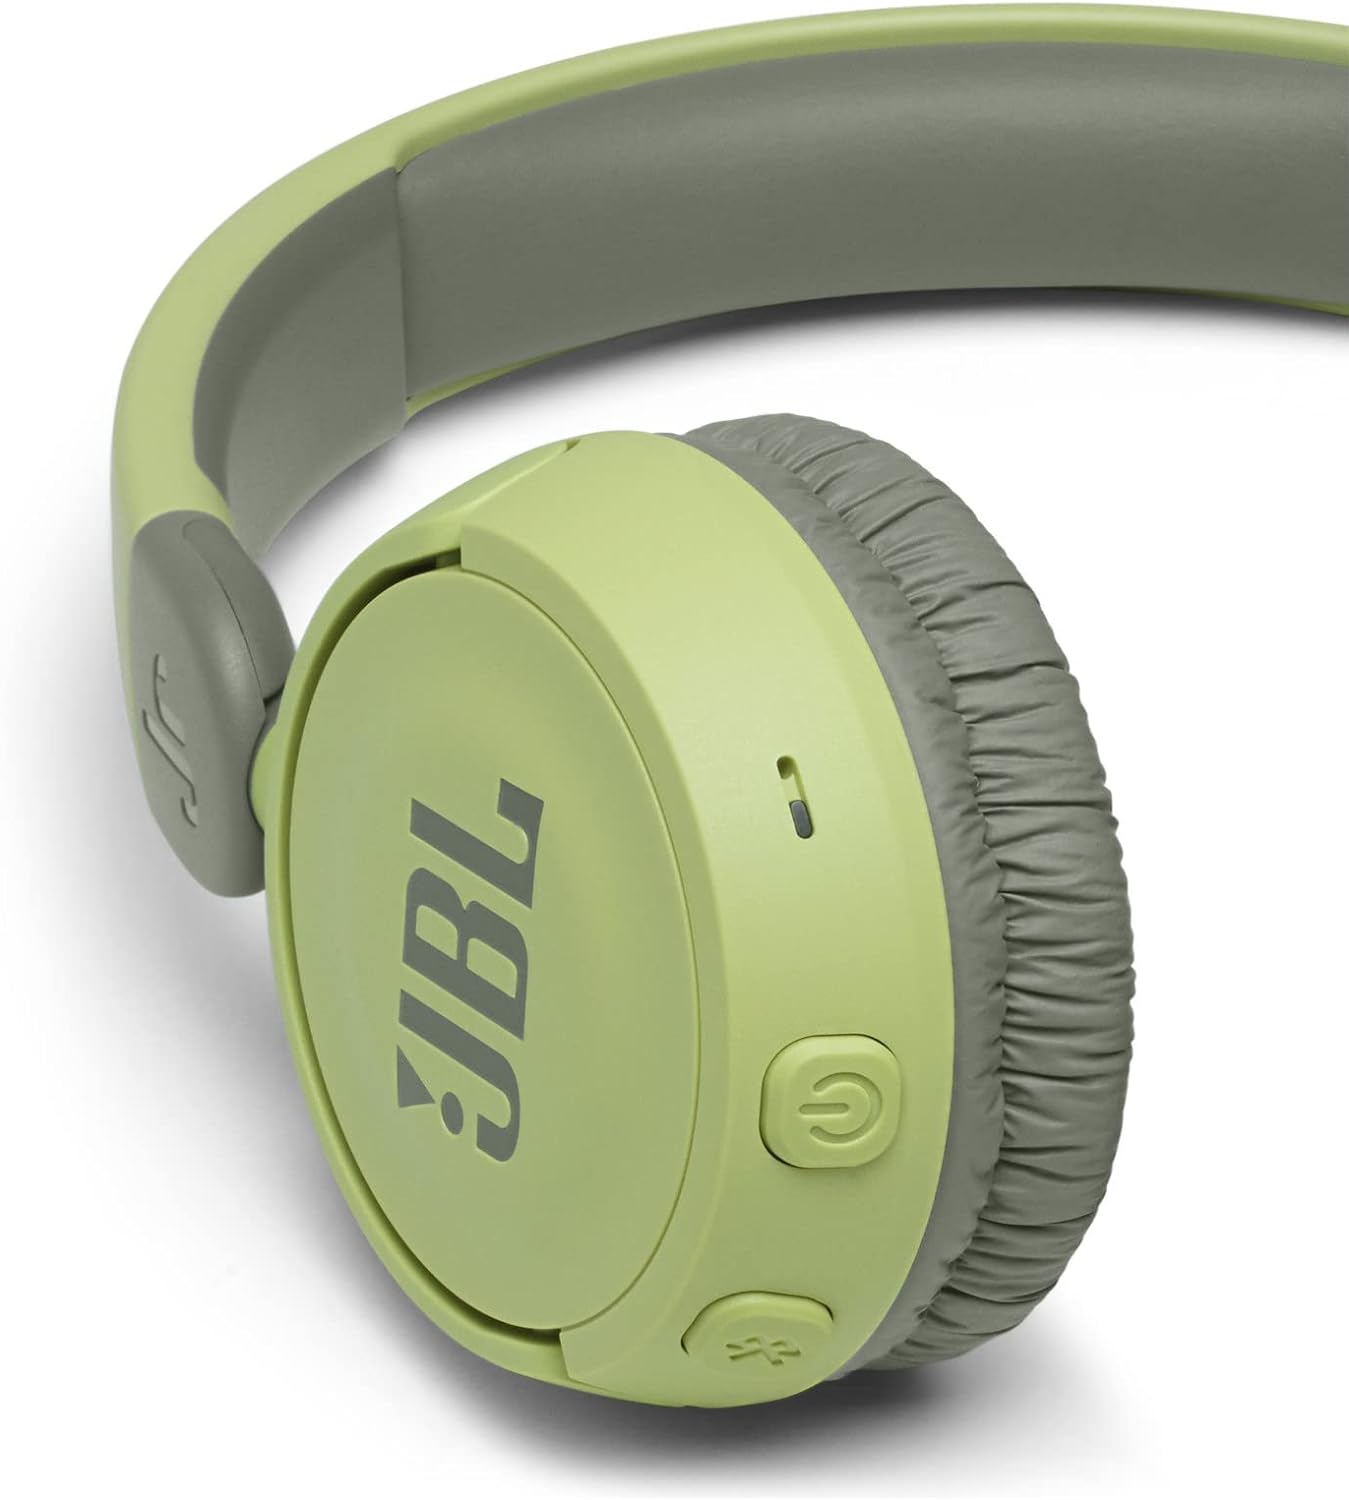 JBL Jr 310BT - Children's over-ear headphones